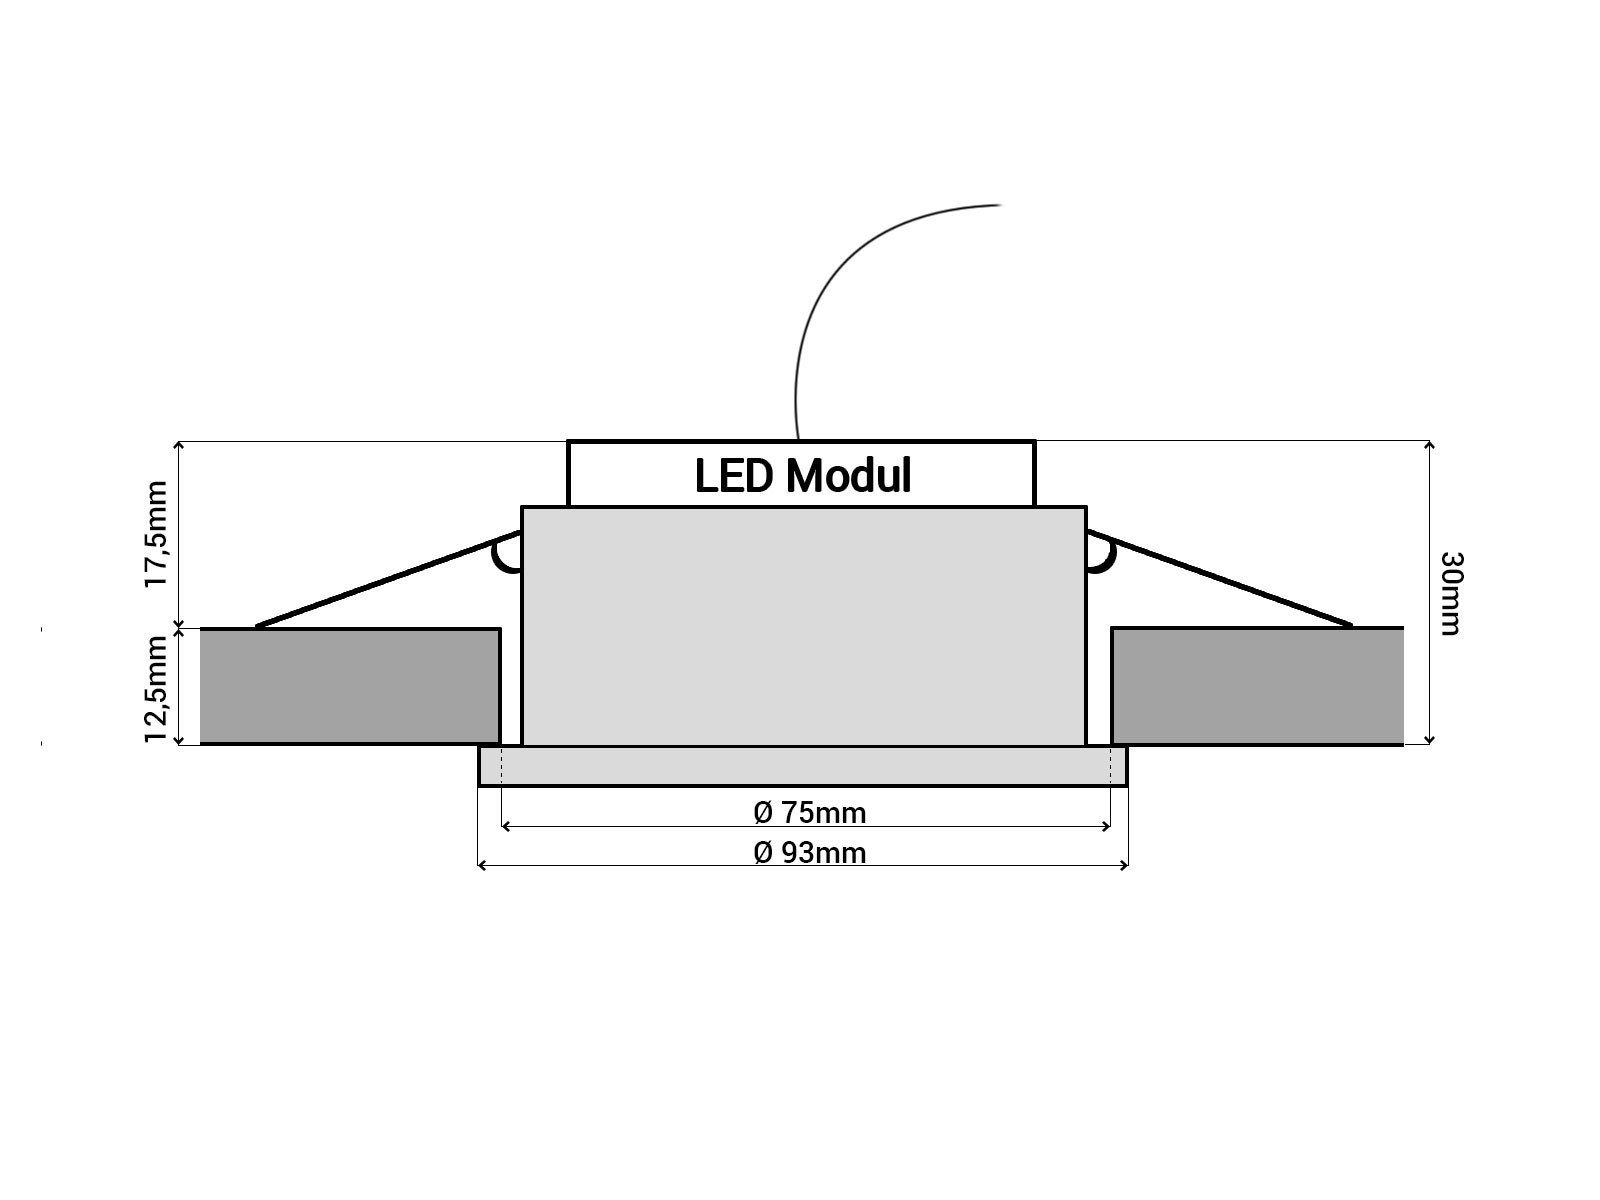 SSC-LUXon LED Einbaustrahler RF-2 LED-Einbauspot gebuerstet Warmweiß rund schwarz Alu flach LED-Modul, mit